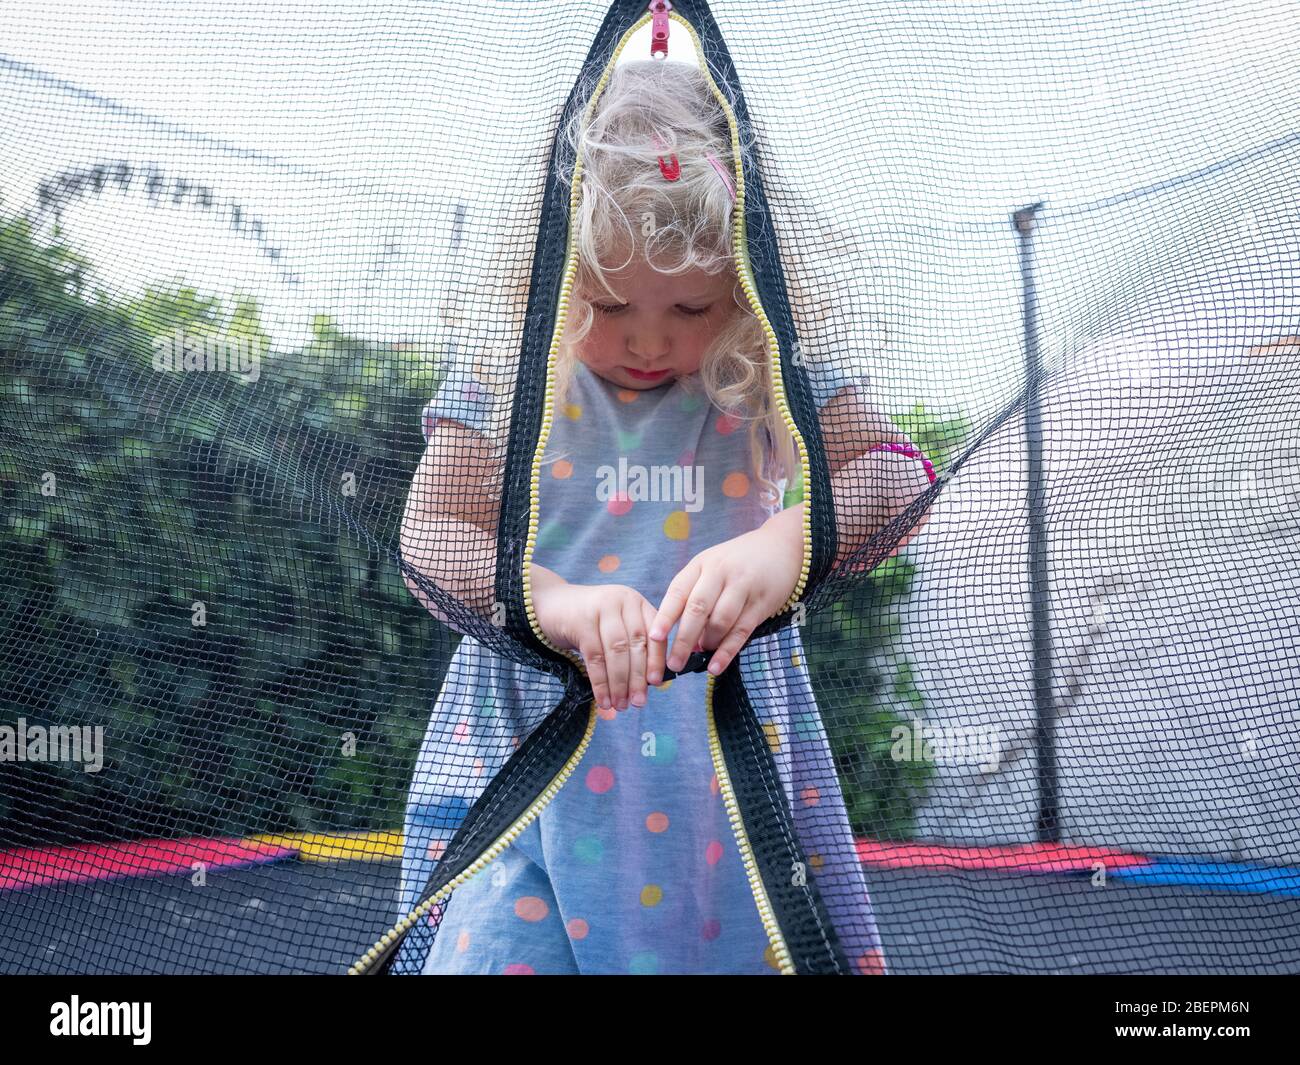 Une fille de deux ans (près de trois ans) à l'entrée de son trampoline de jardin. Banque D'Images